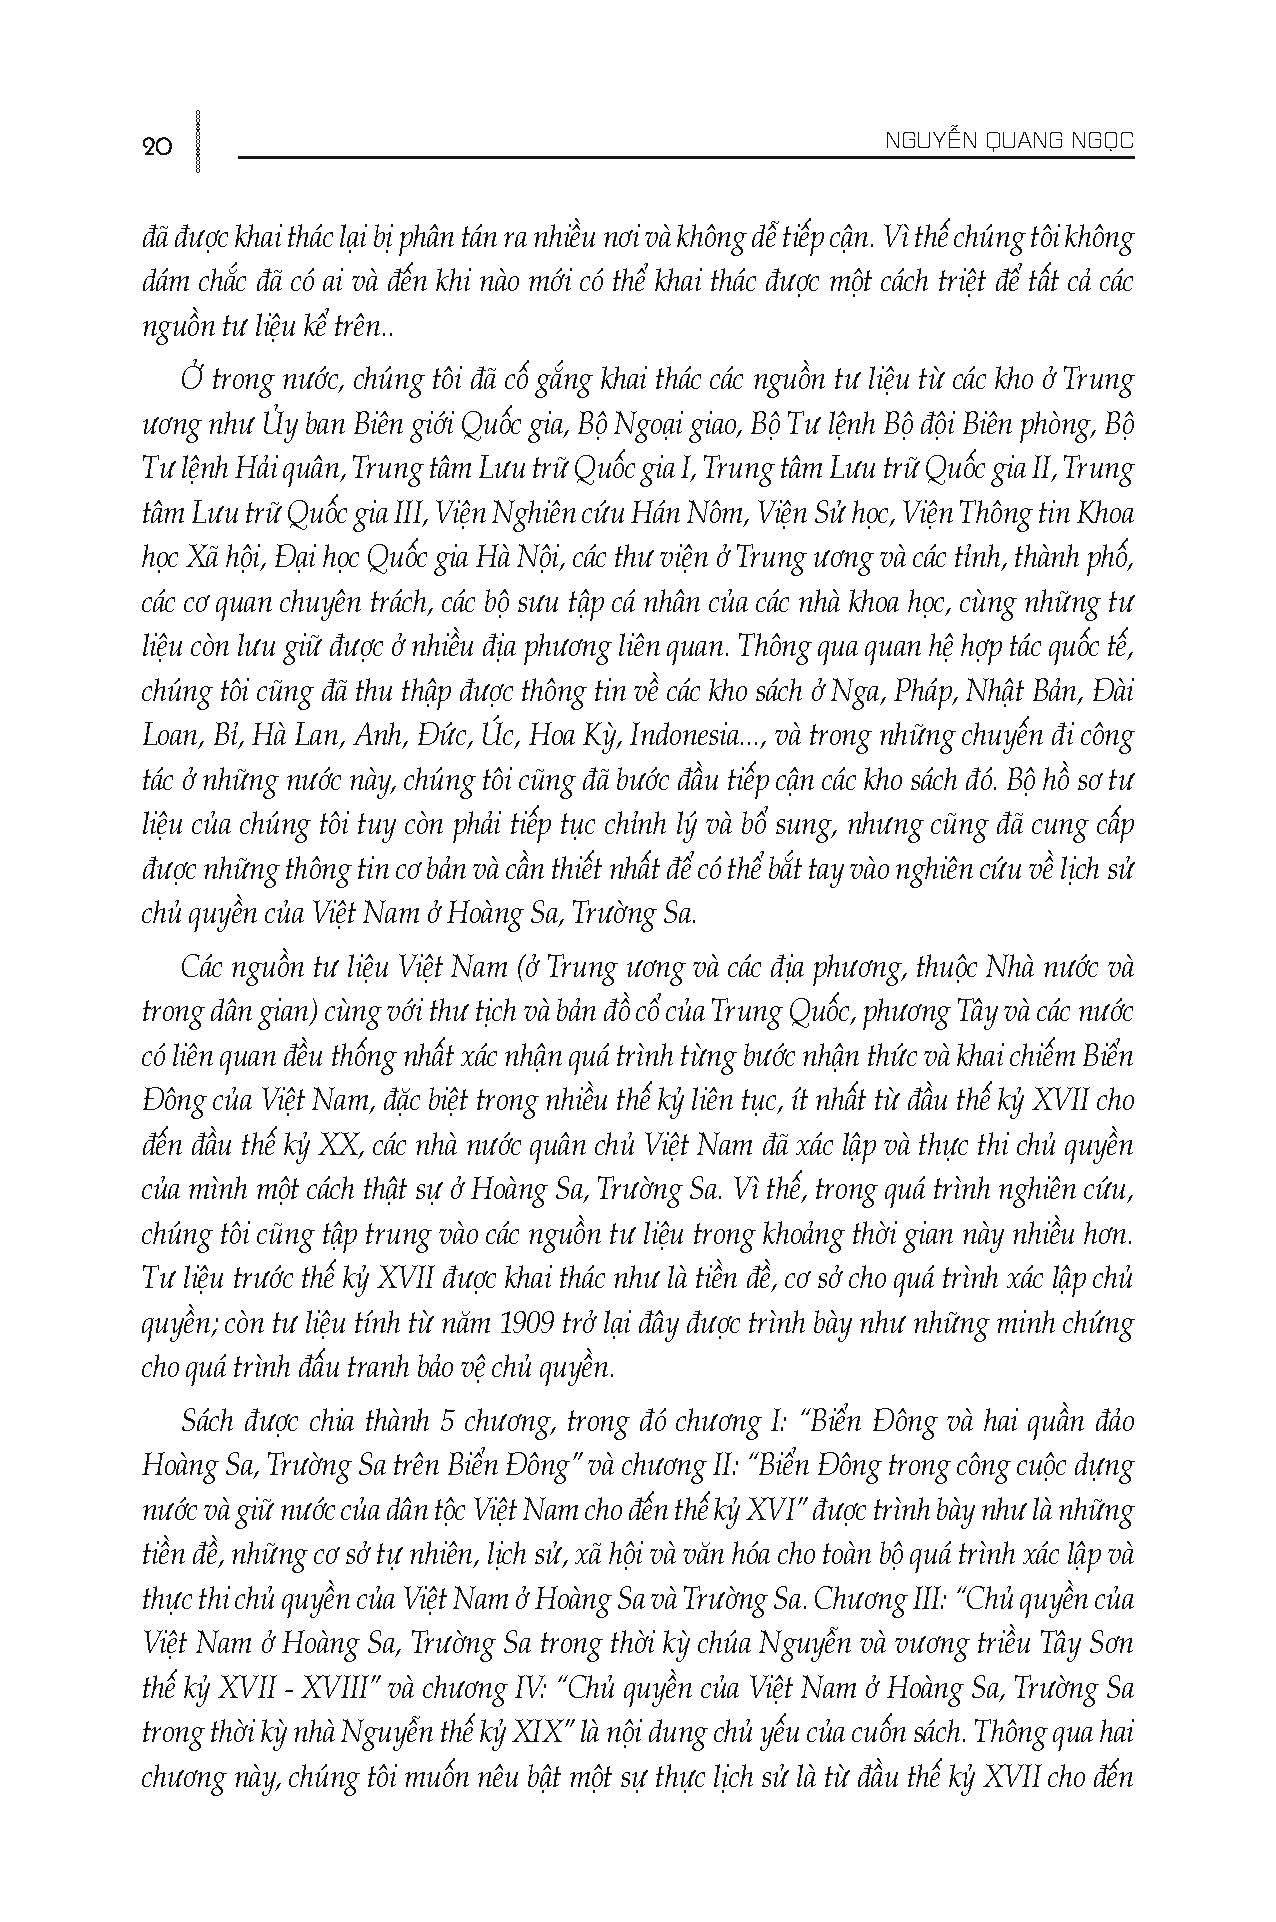 Hoàng Sa, Trường Sa CQ Của Việt Nam - Tư Liệu Và Sự Thật Lịch Sử